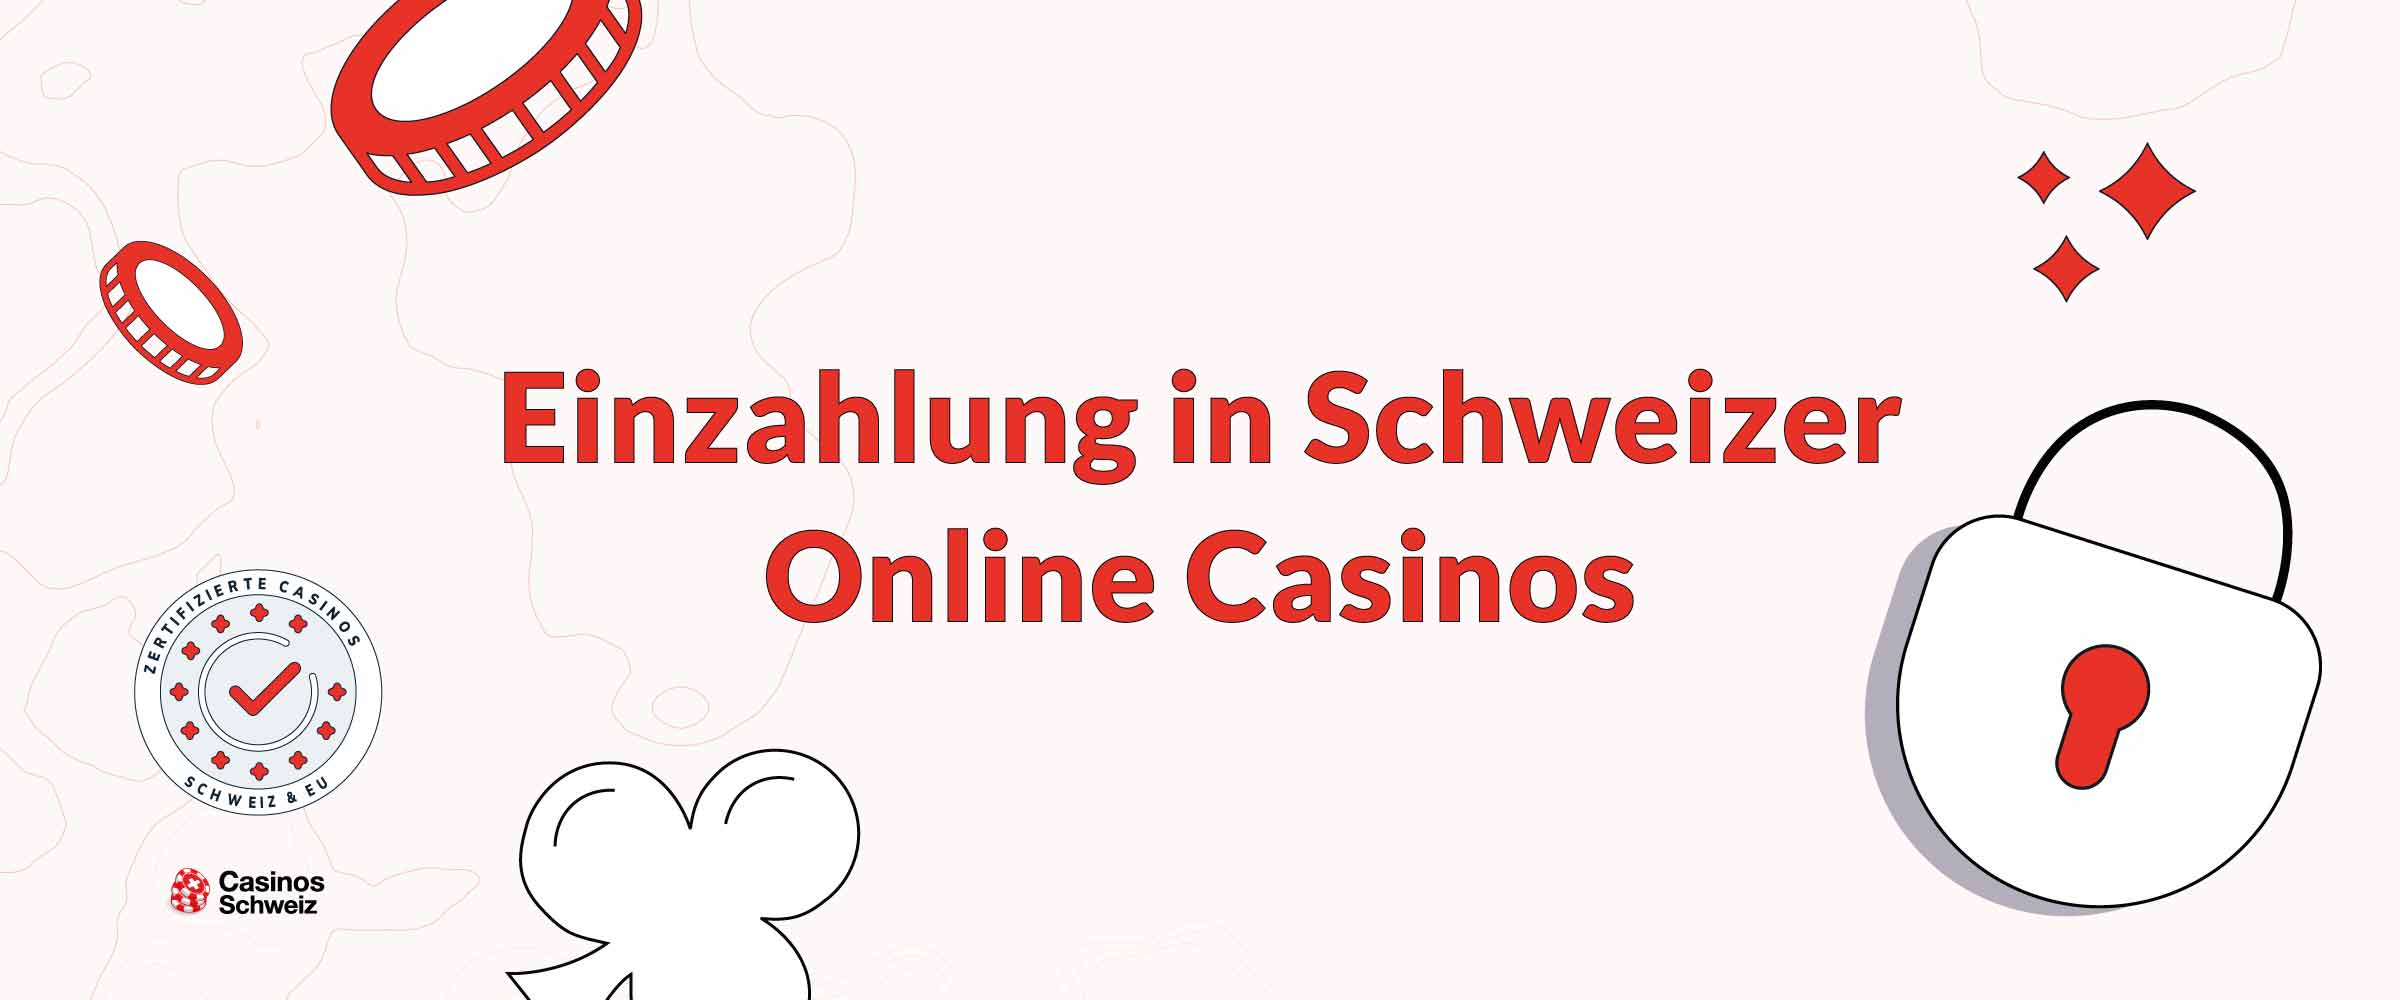 Einzahlung in Schweizer Online Casinos